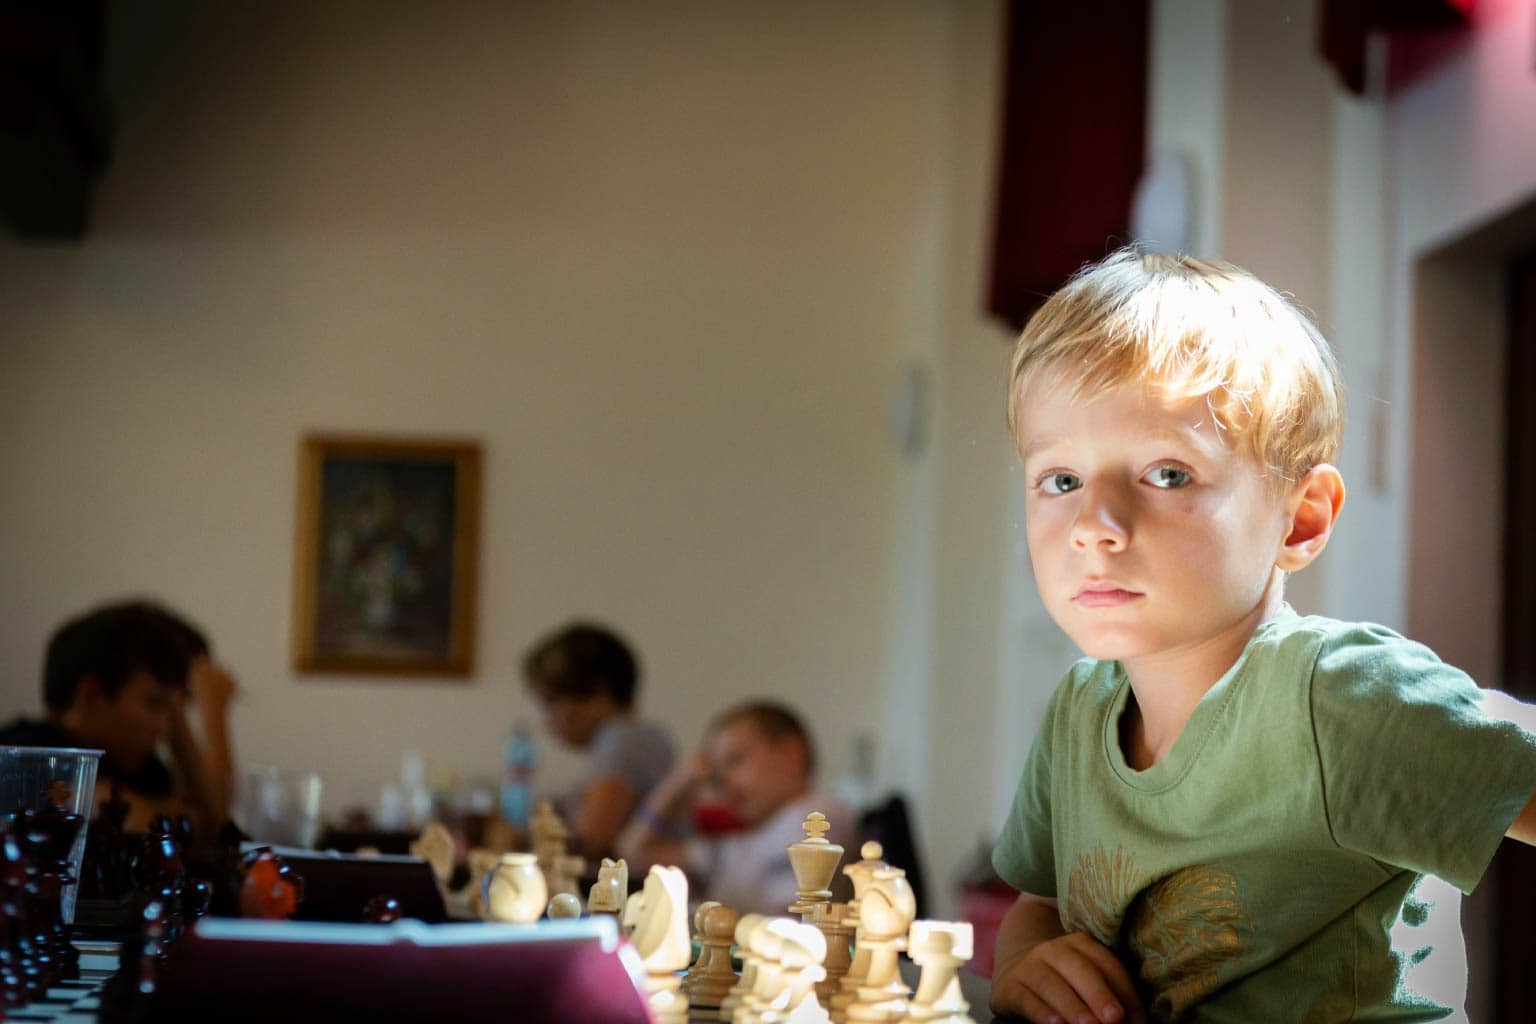 criança sentada em frente ao tabuleiro representando a história do xadrez